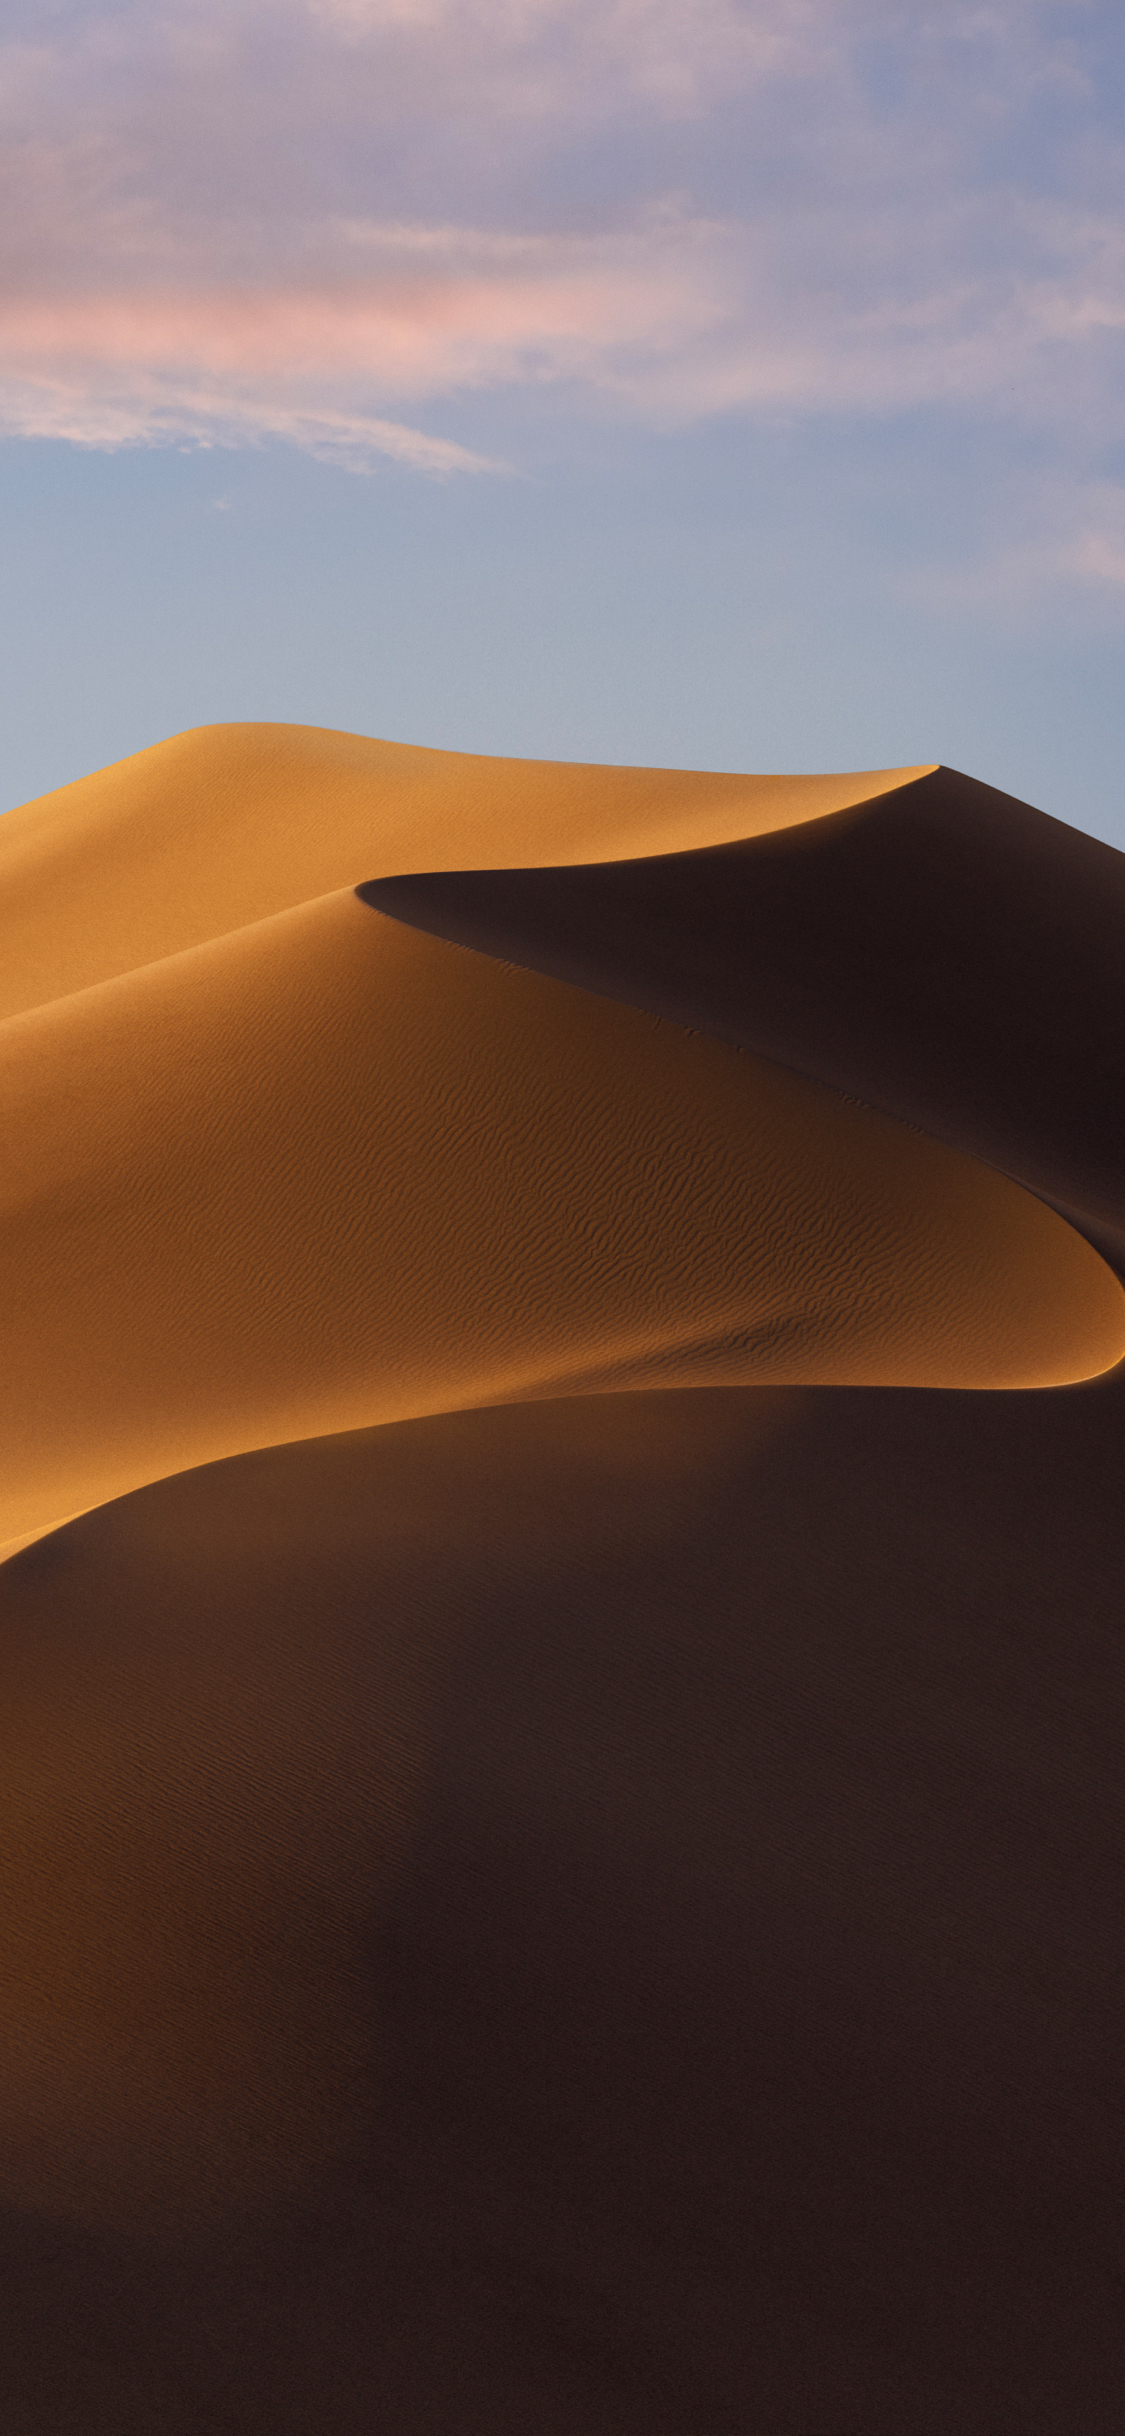 mac fondo de pantalla para iphone,desierto,ergio,arena,arena cantando,duna